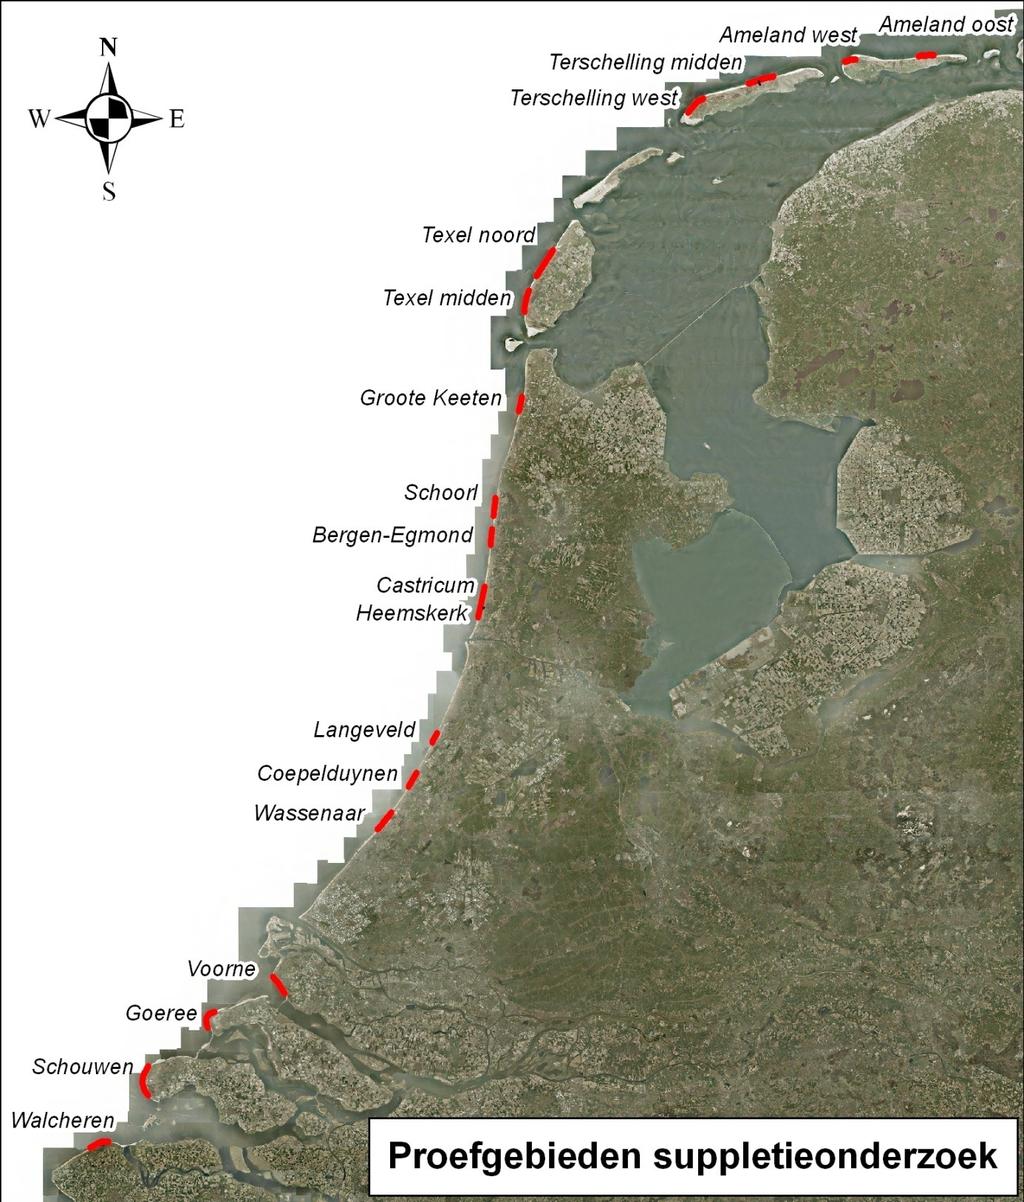 Figuur 4.1 Overzicht proefgebieden Heemskerk (RSP 48.50-51.00): eenmaal op het strand gesuppleerd.